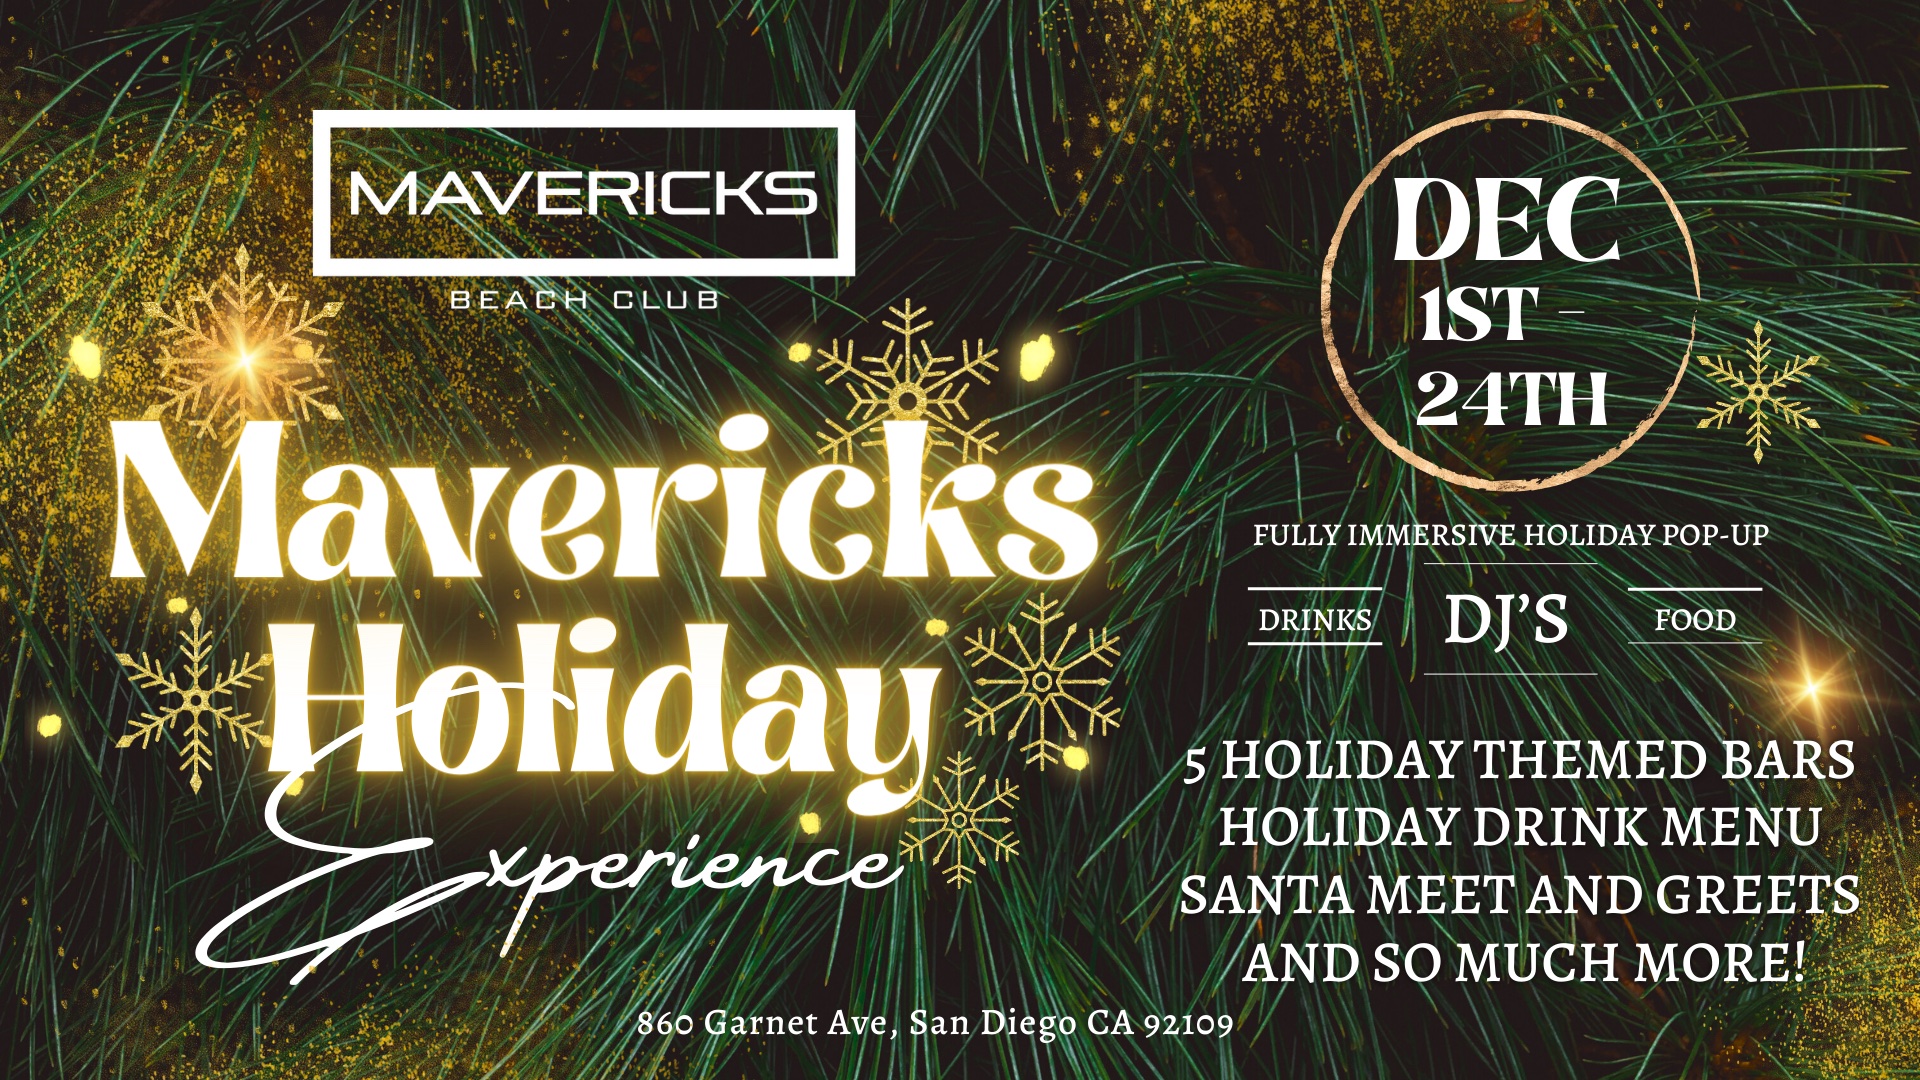 Mavericks Beach Club Holiday PopUp Available Through Christmas Eve